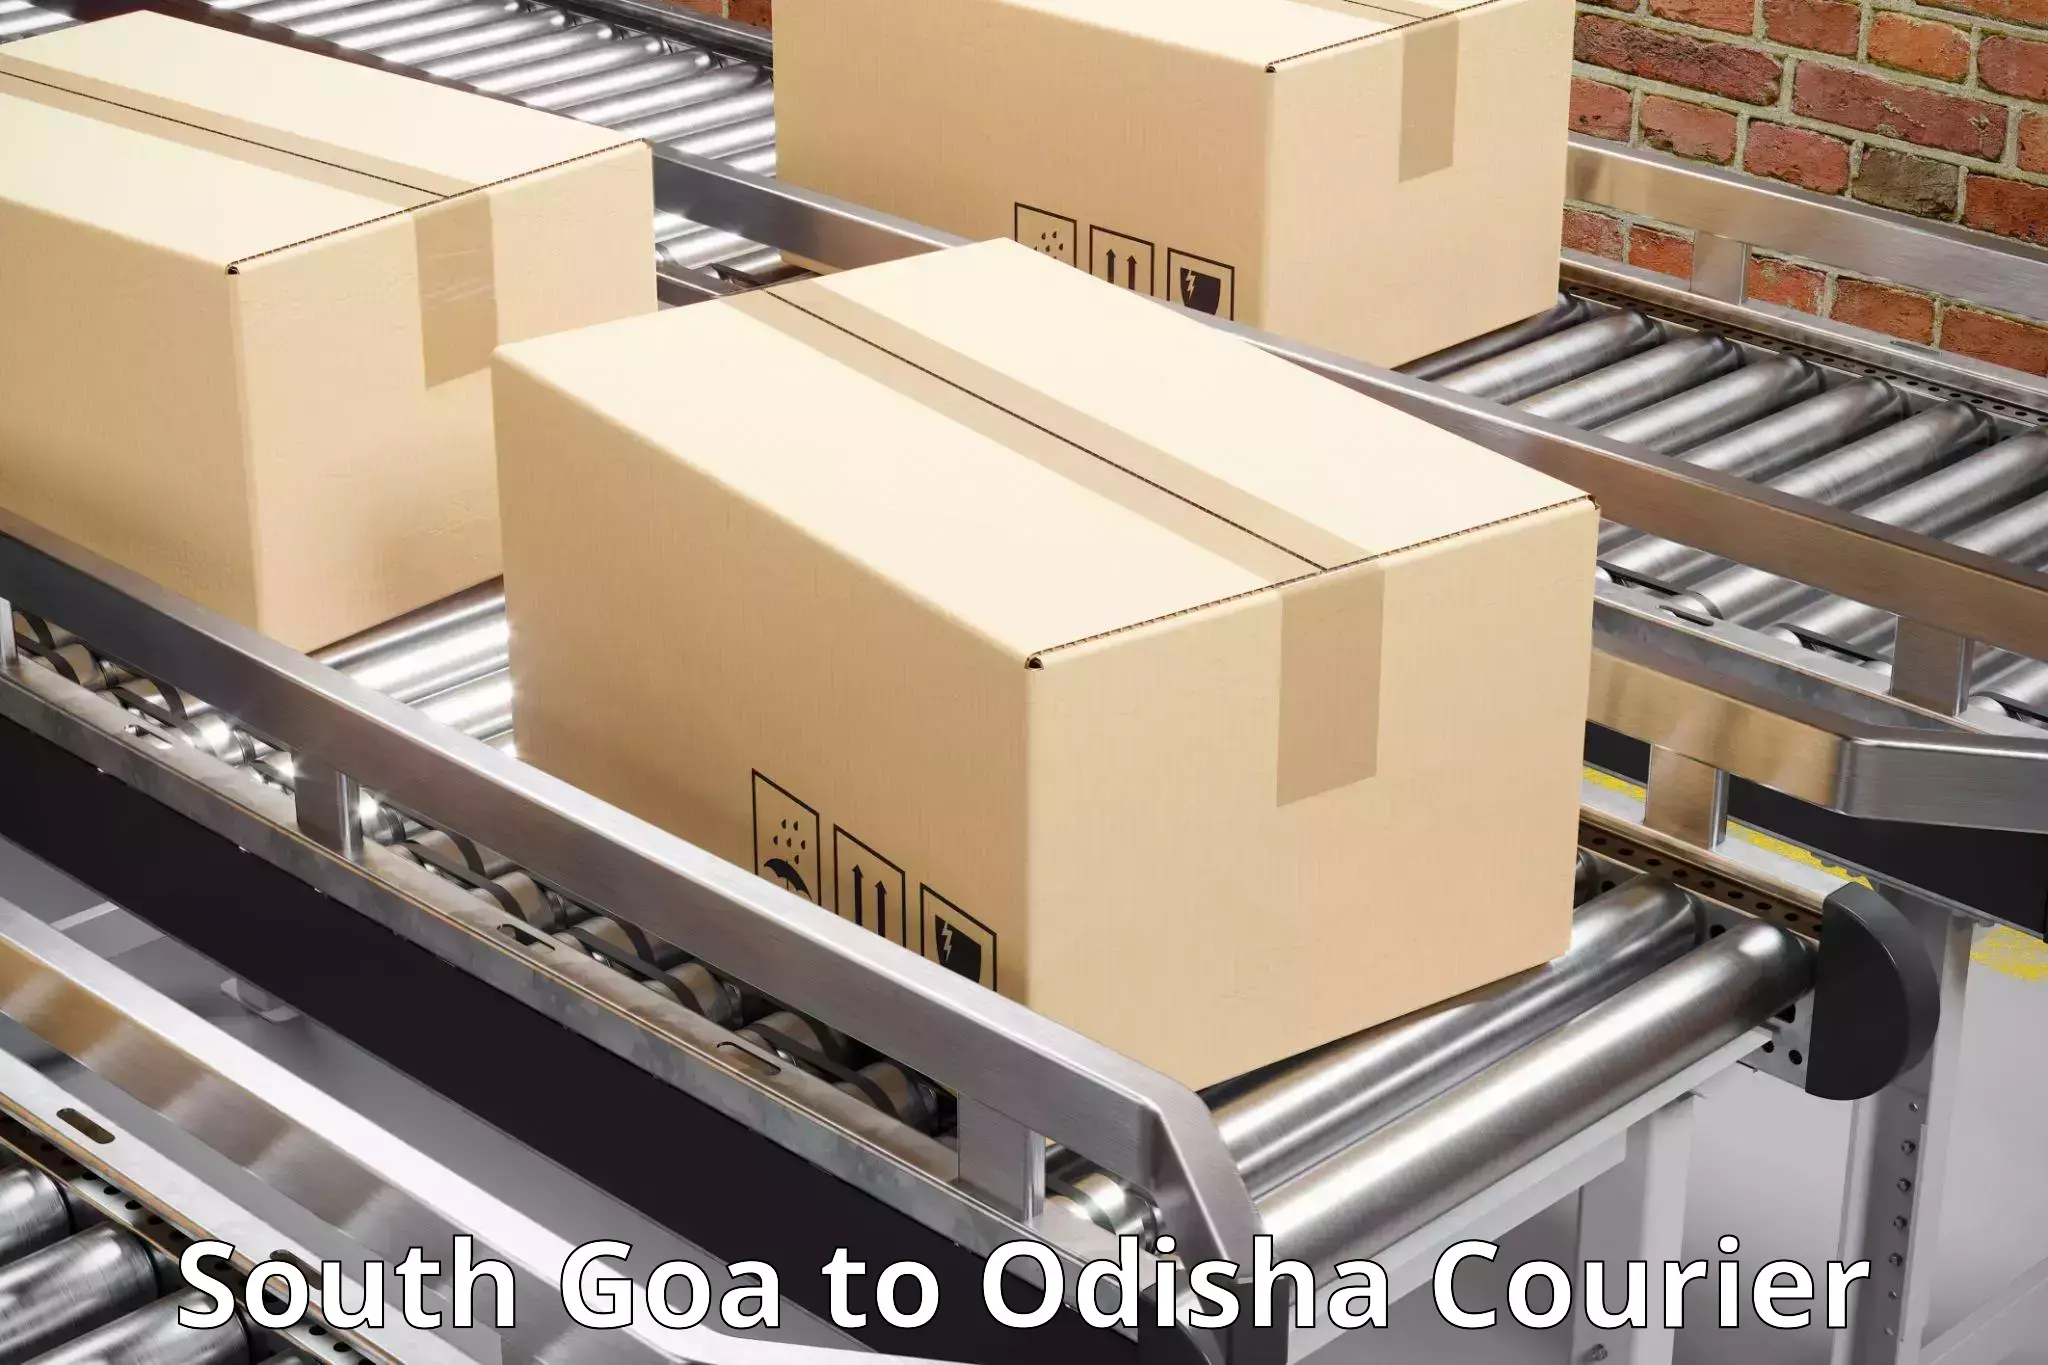 Courier app South Goa to Tihidi